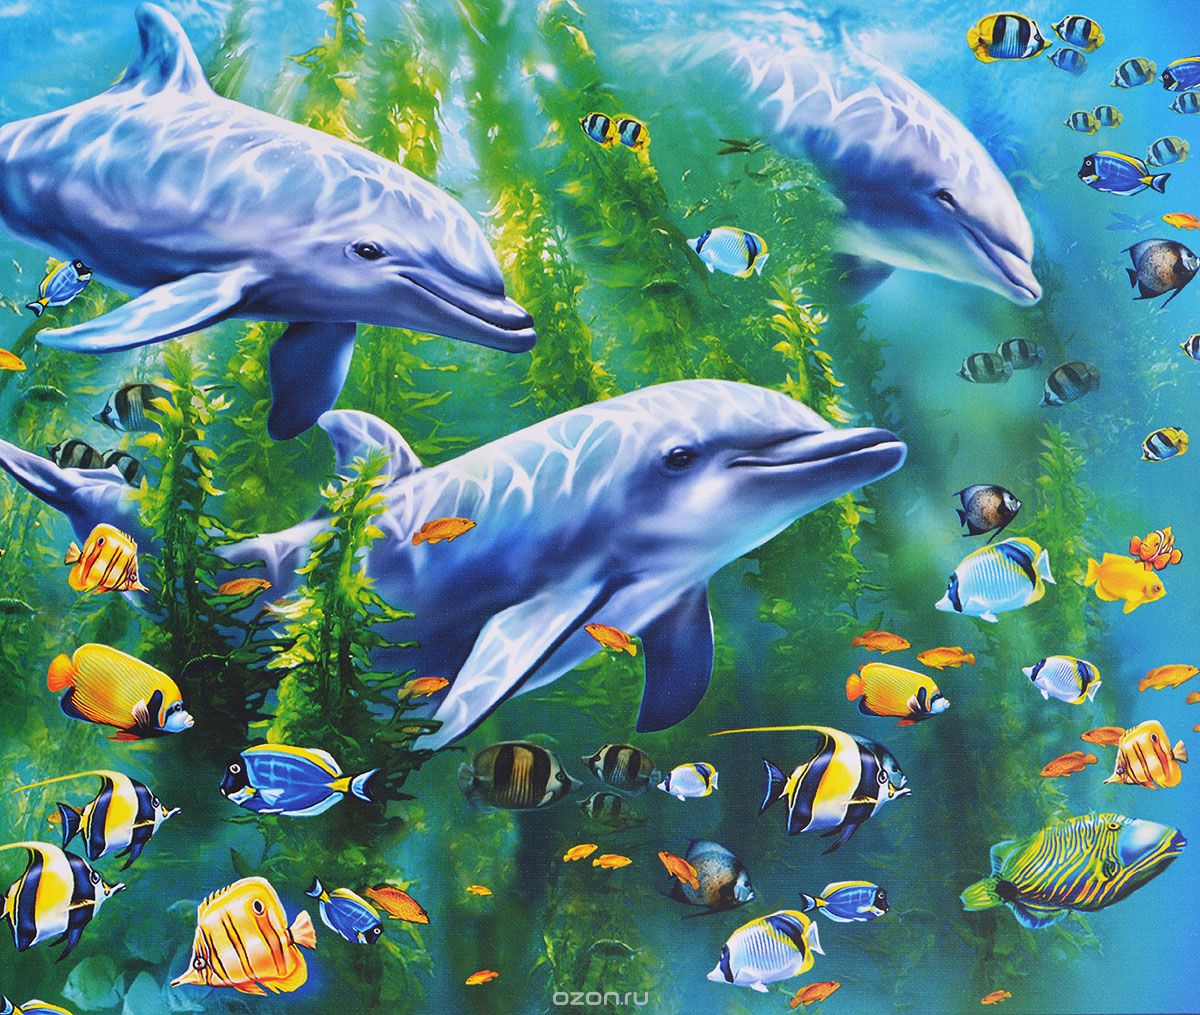 სურათის დელფინები ზღვაში